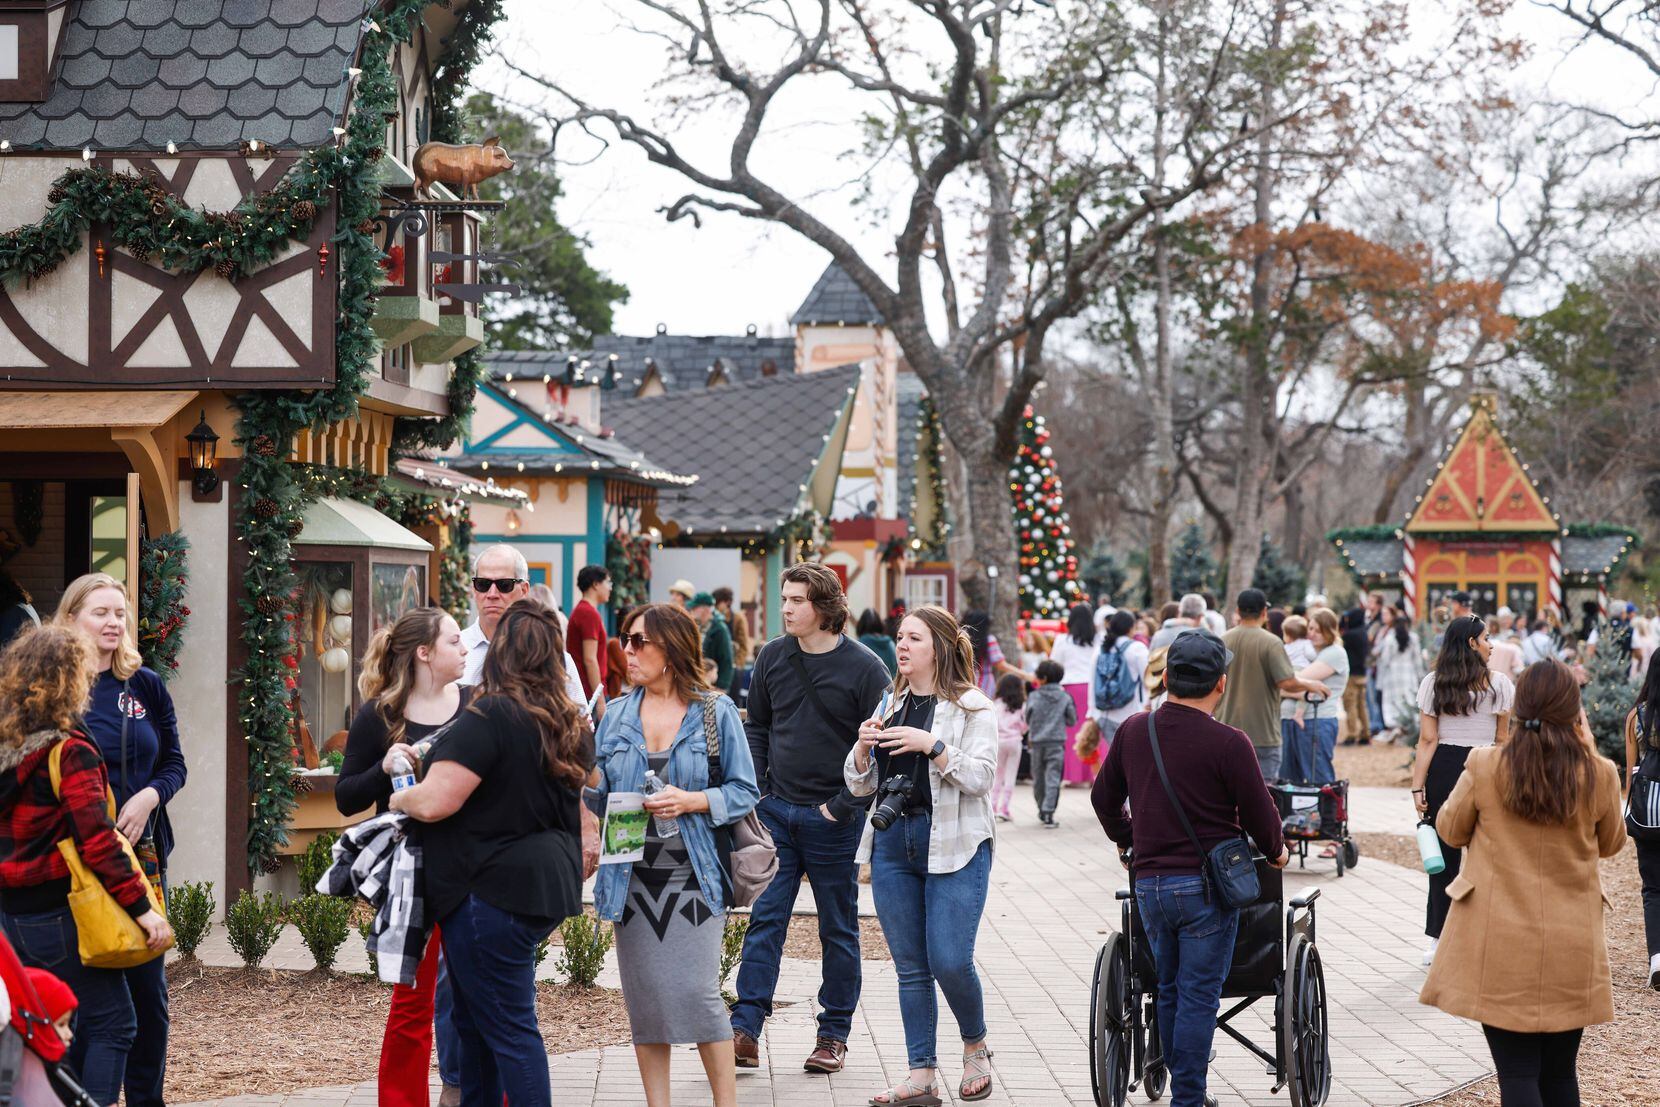 The Children’s Christmas Village at the Dallas Arboretum in Dallas on Dec. 29.